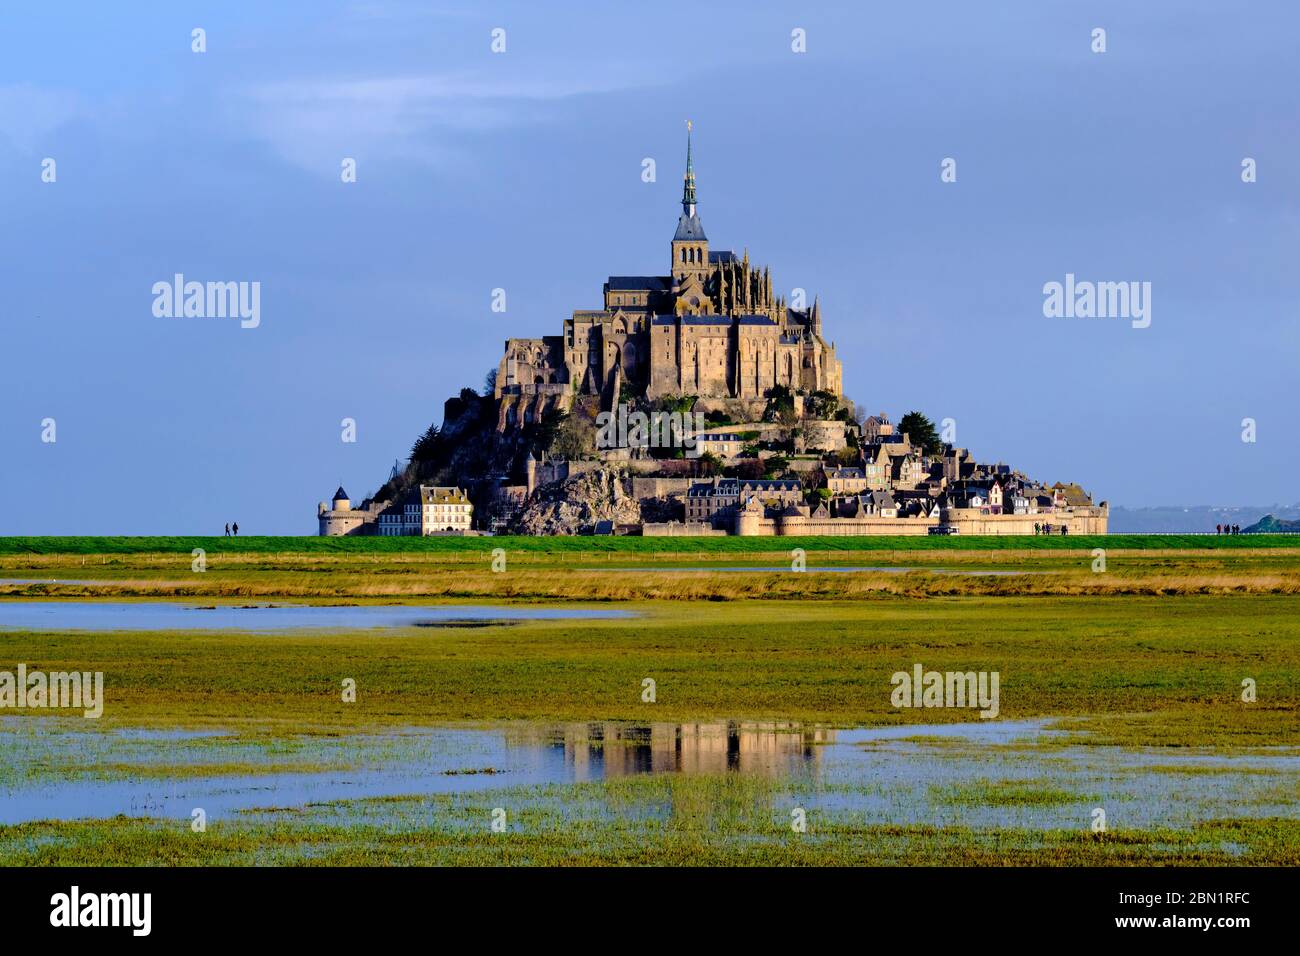 France, Normandie, Département de la Manche, Baie du Mont Saint-Michel Patrimoine mondial de l'UNESCO, Abbaye du Mont Saint-Michel Banque D'Images